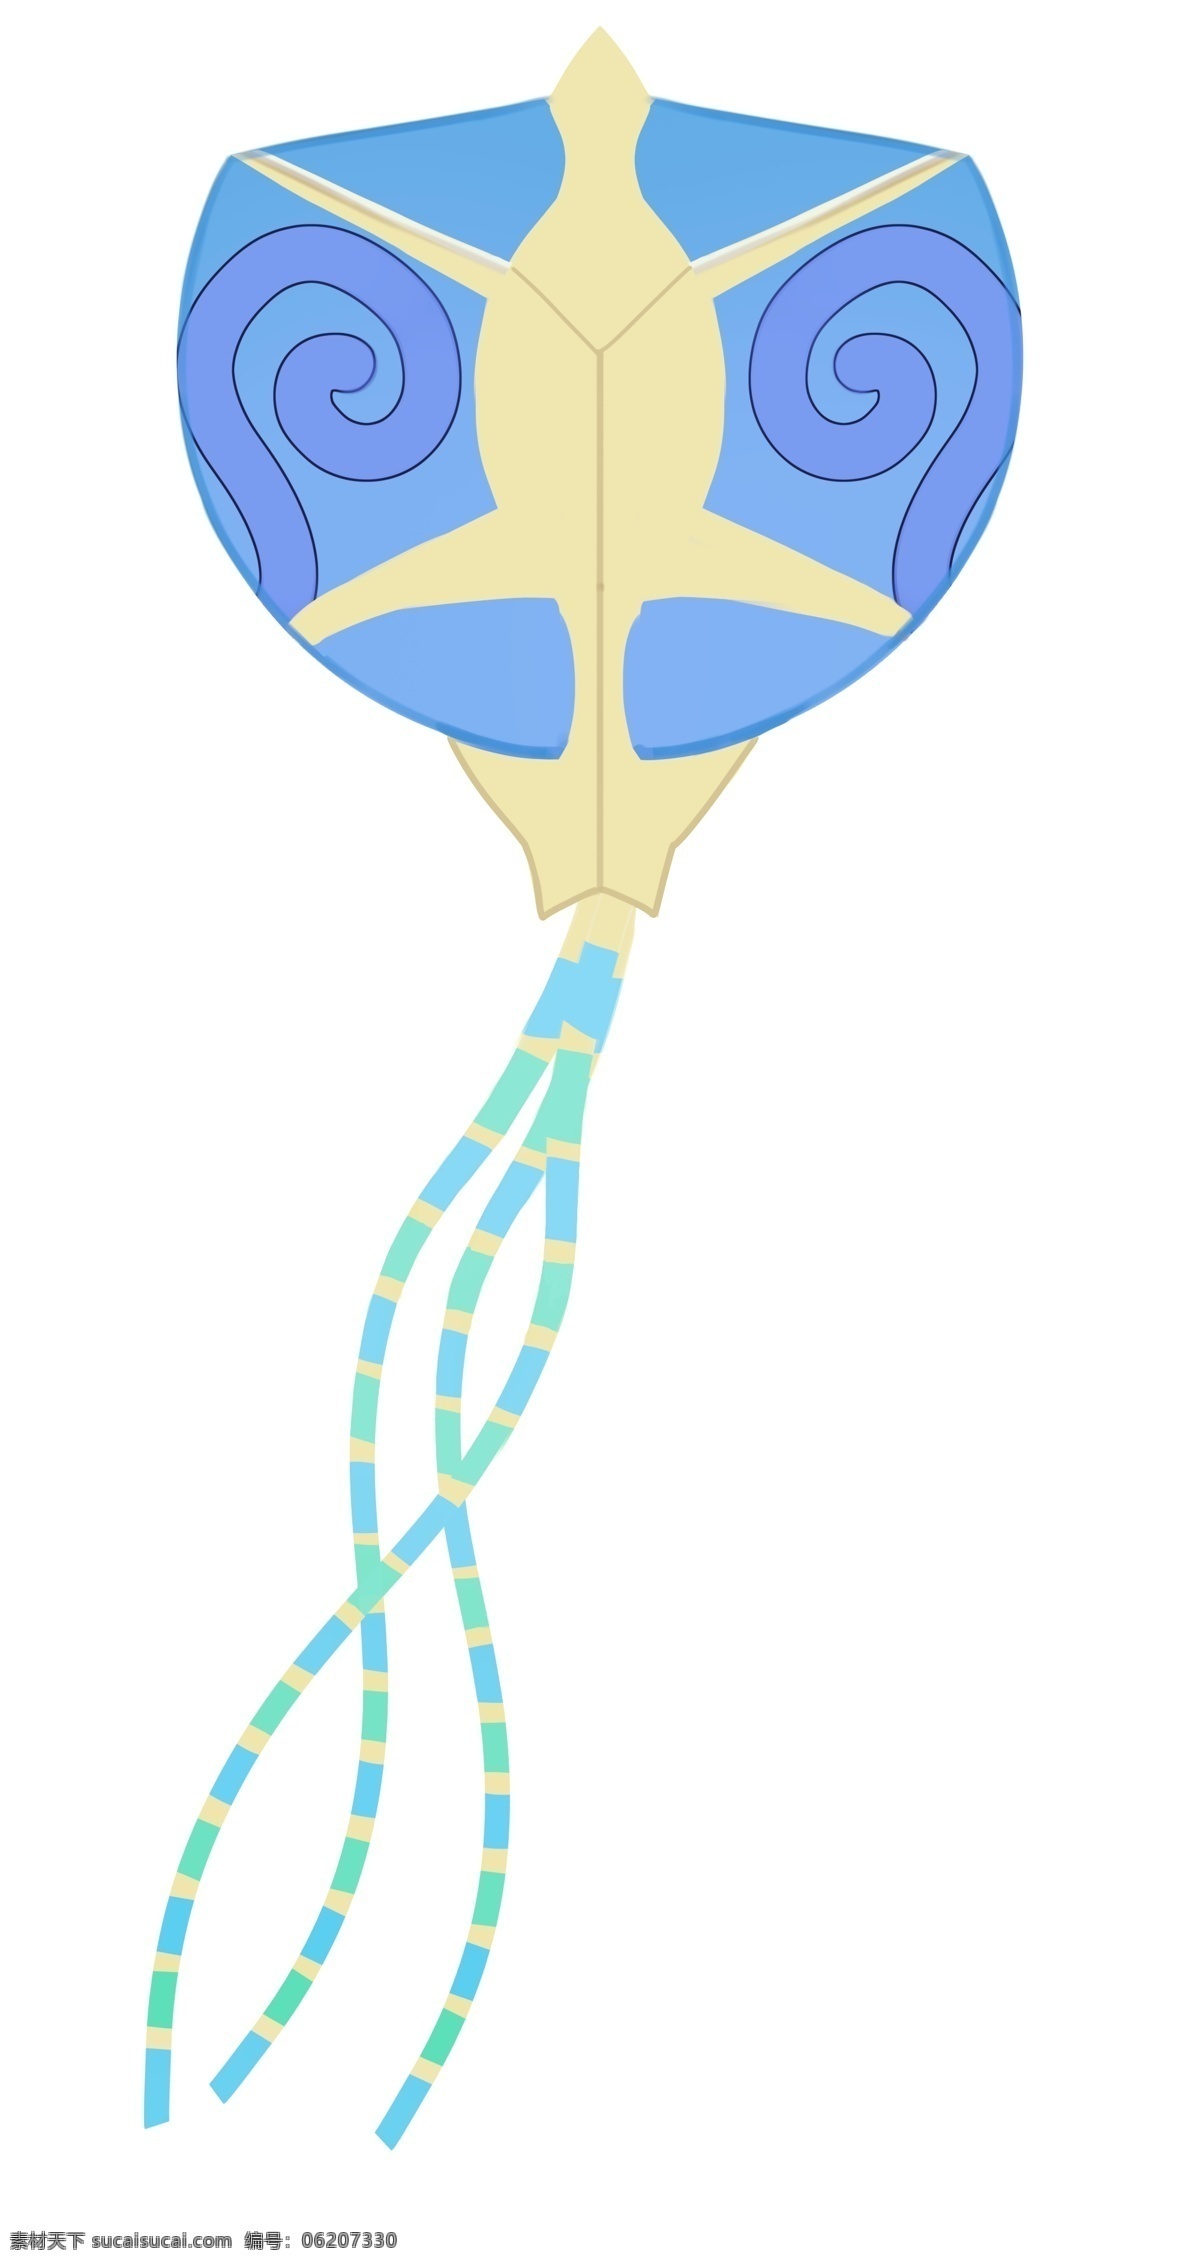 蓝色 风筝 玩具 插画 蓝色的风筝 卡通插画 风筝插画 玩具插画 玩具风筝 风筝模型 漂亮的风筝